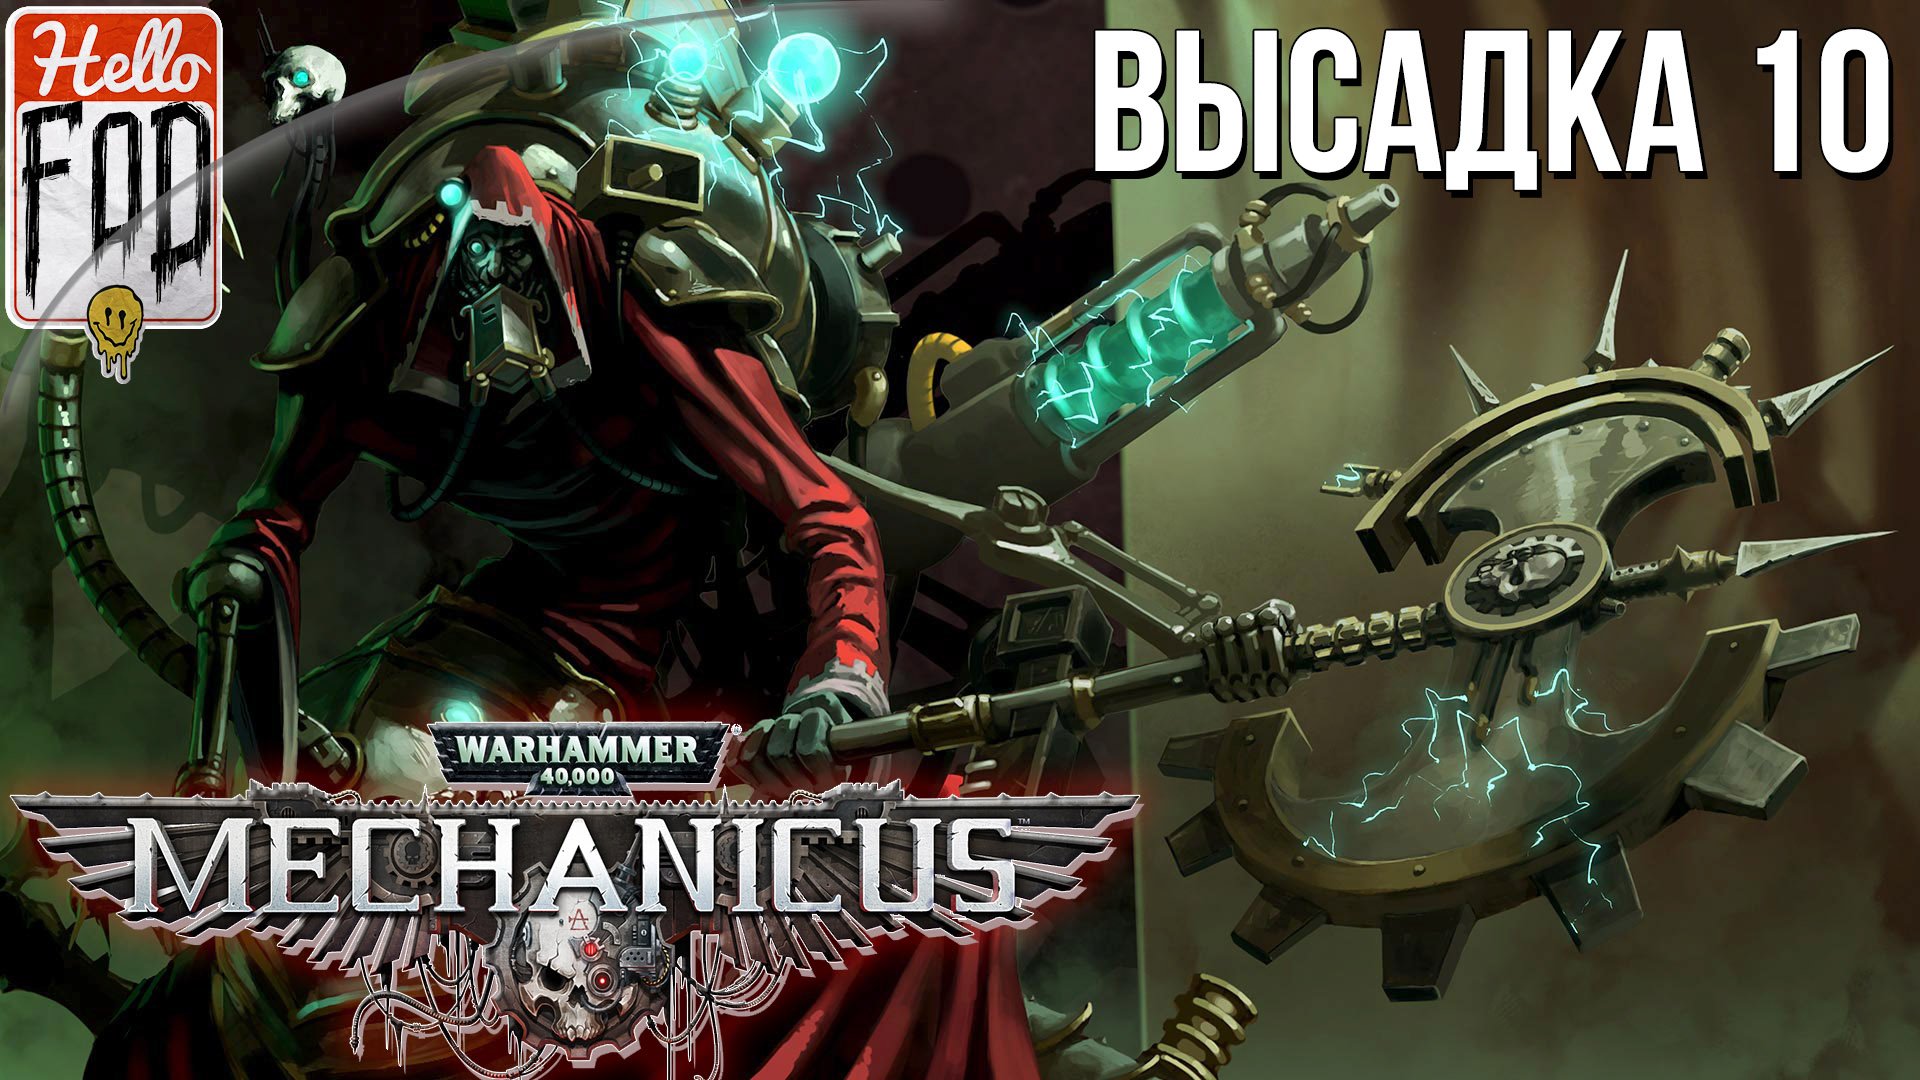 Warhammer 40.000 Mechanicus (Сложность: Очень сложно) ➤ Тяжёлый металл ➤ Высадка 10.